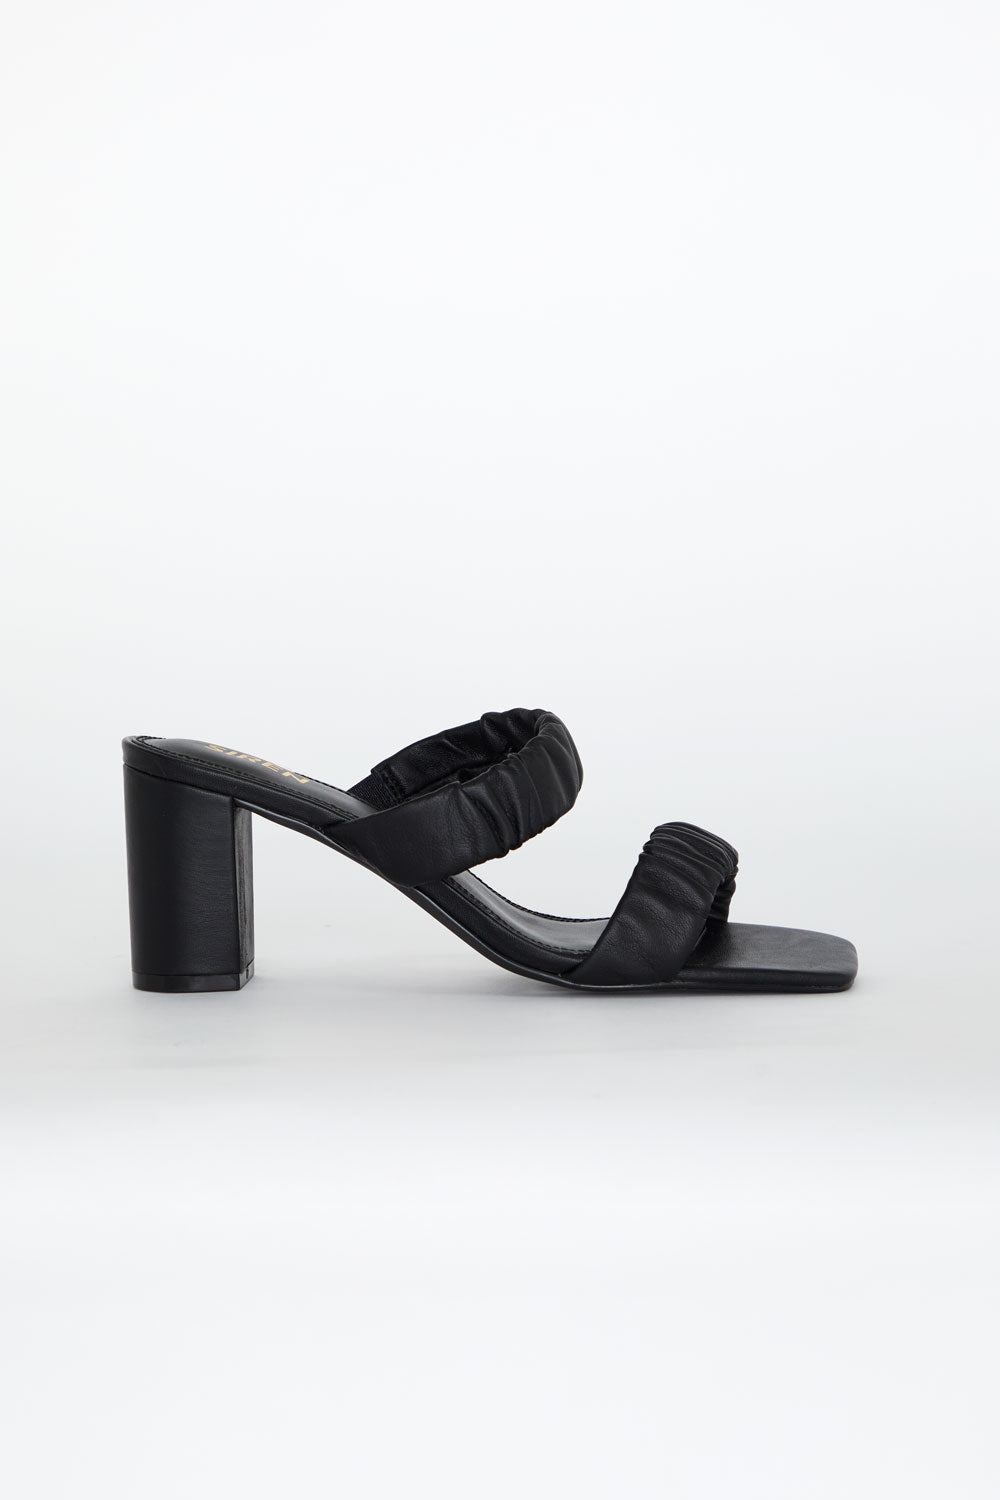 Rusty Shoes - Black | Siren Shoes | Women's Summer Heels – TULIO Fashion